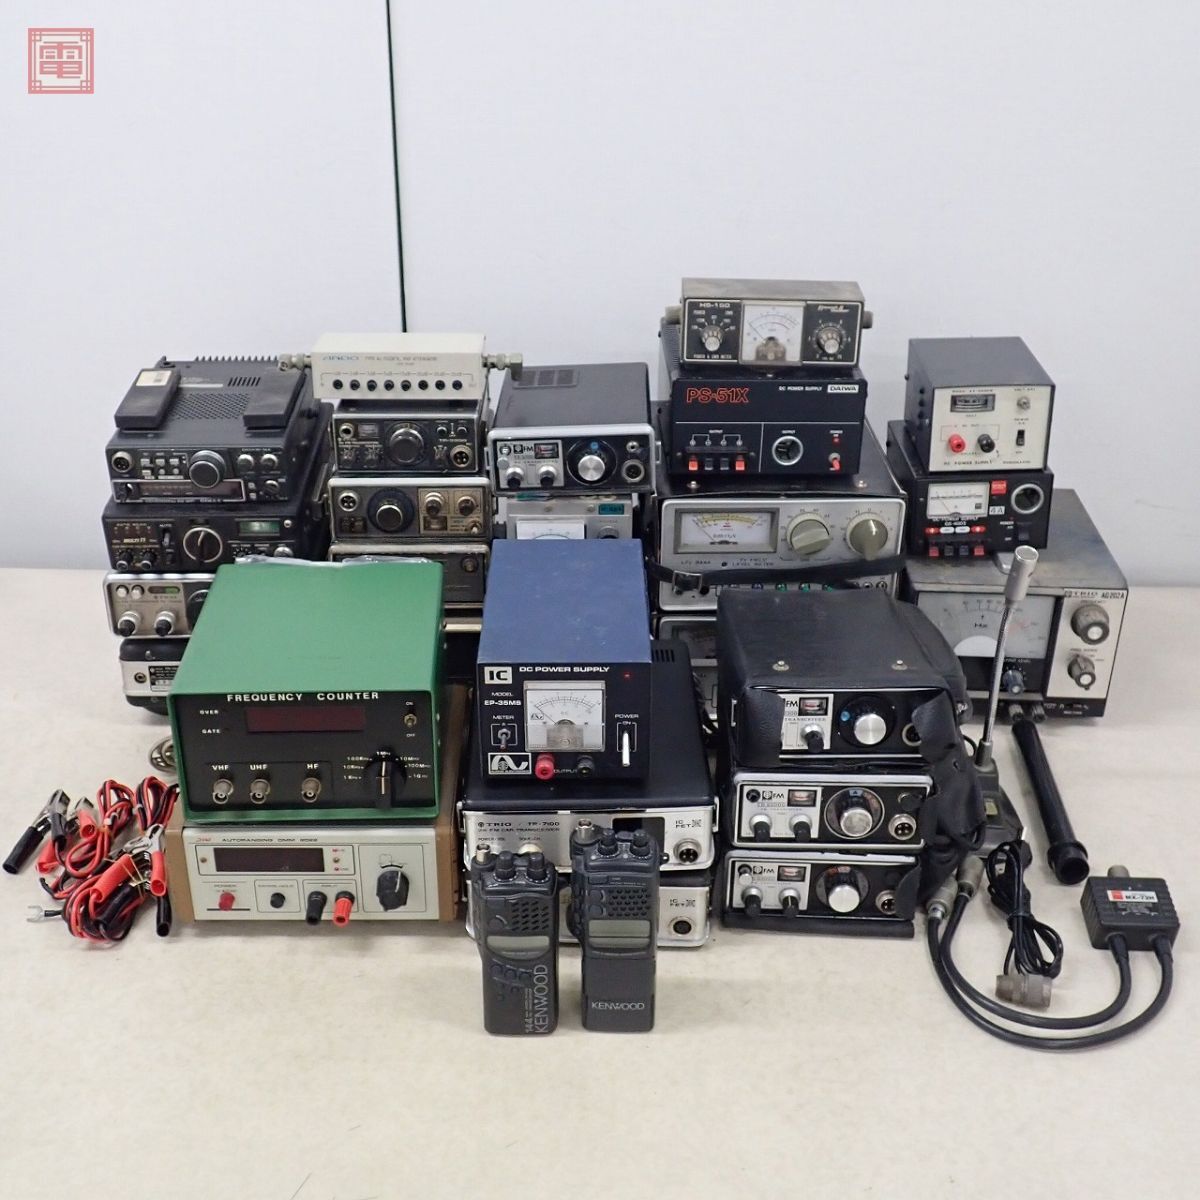 DAIWA/TRIO/KENWOOD/ICOM др. рация периферийные устройства совместно много комплект TR-2200/TR-7100/PS-51X/EP-35MS и т.п. [BB